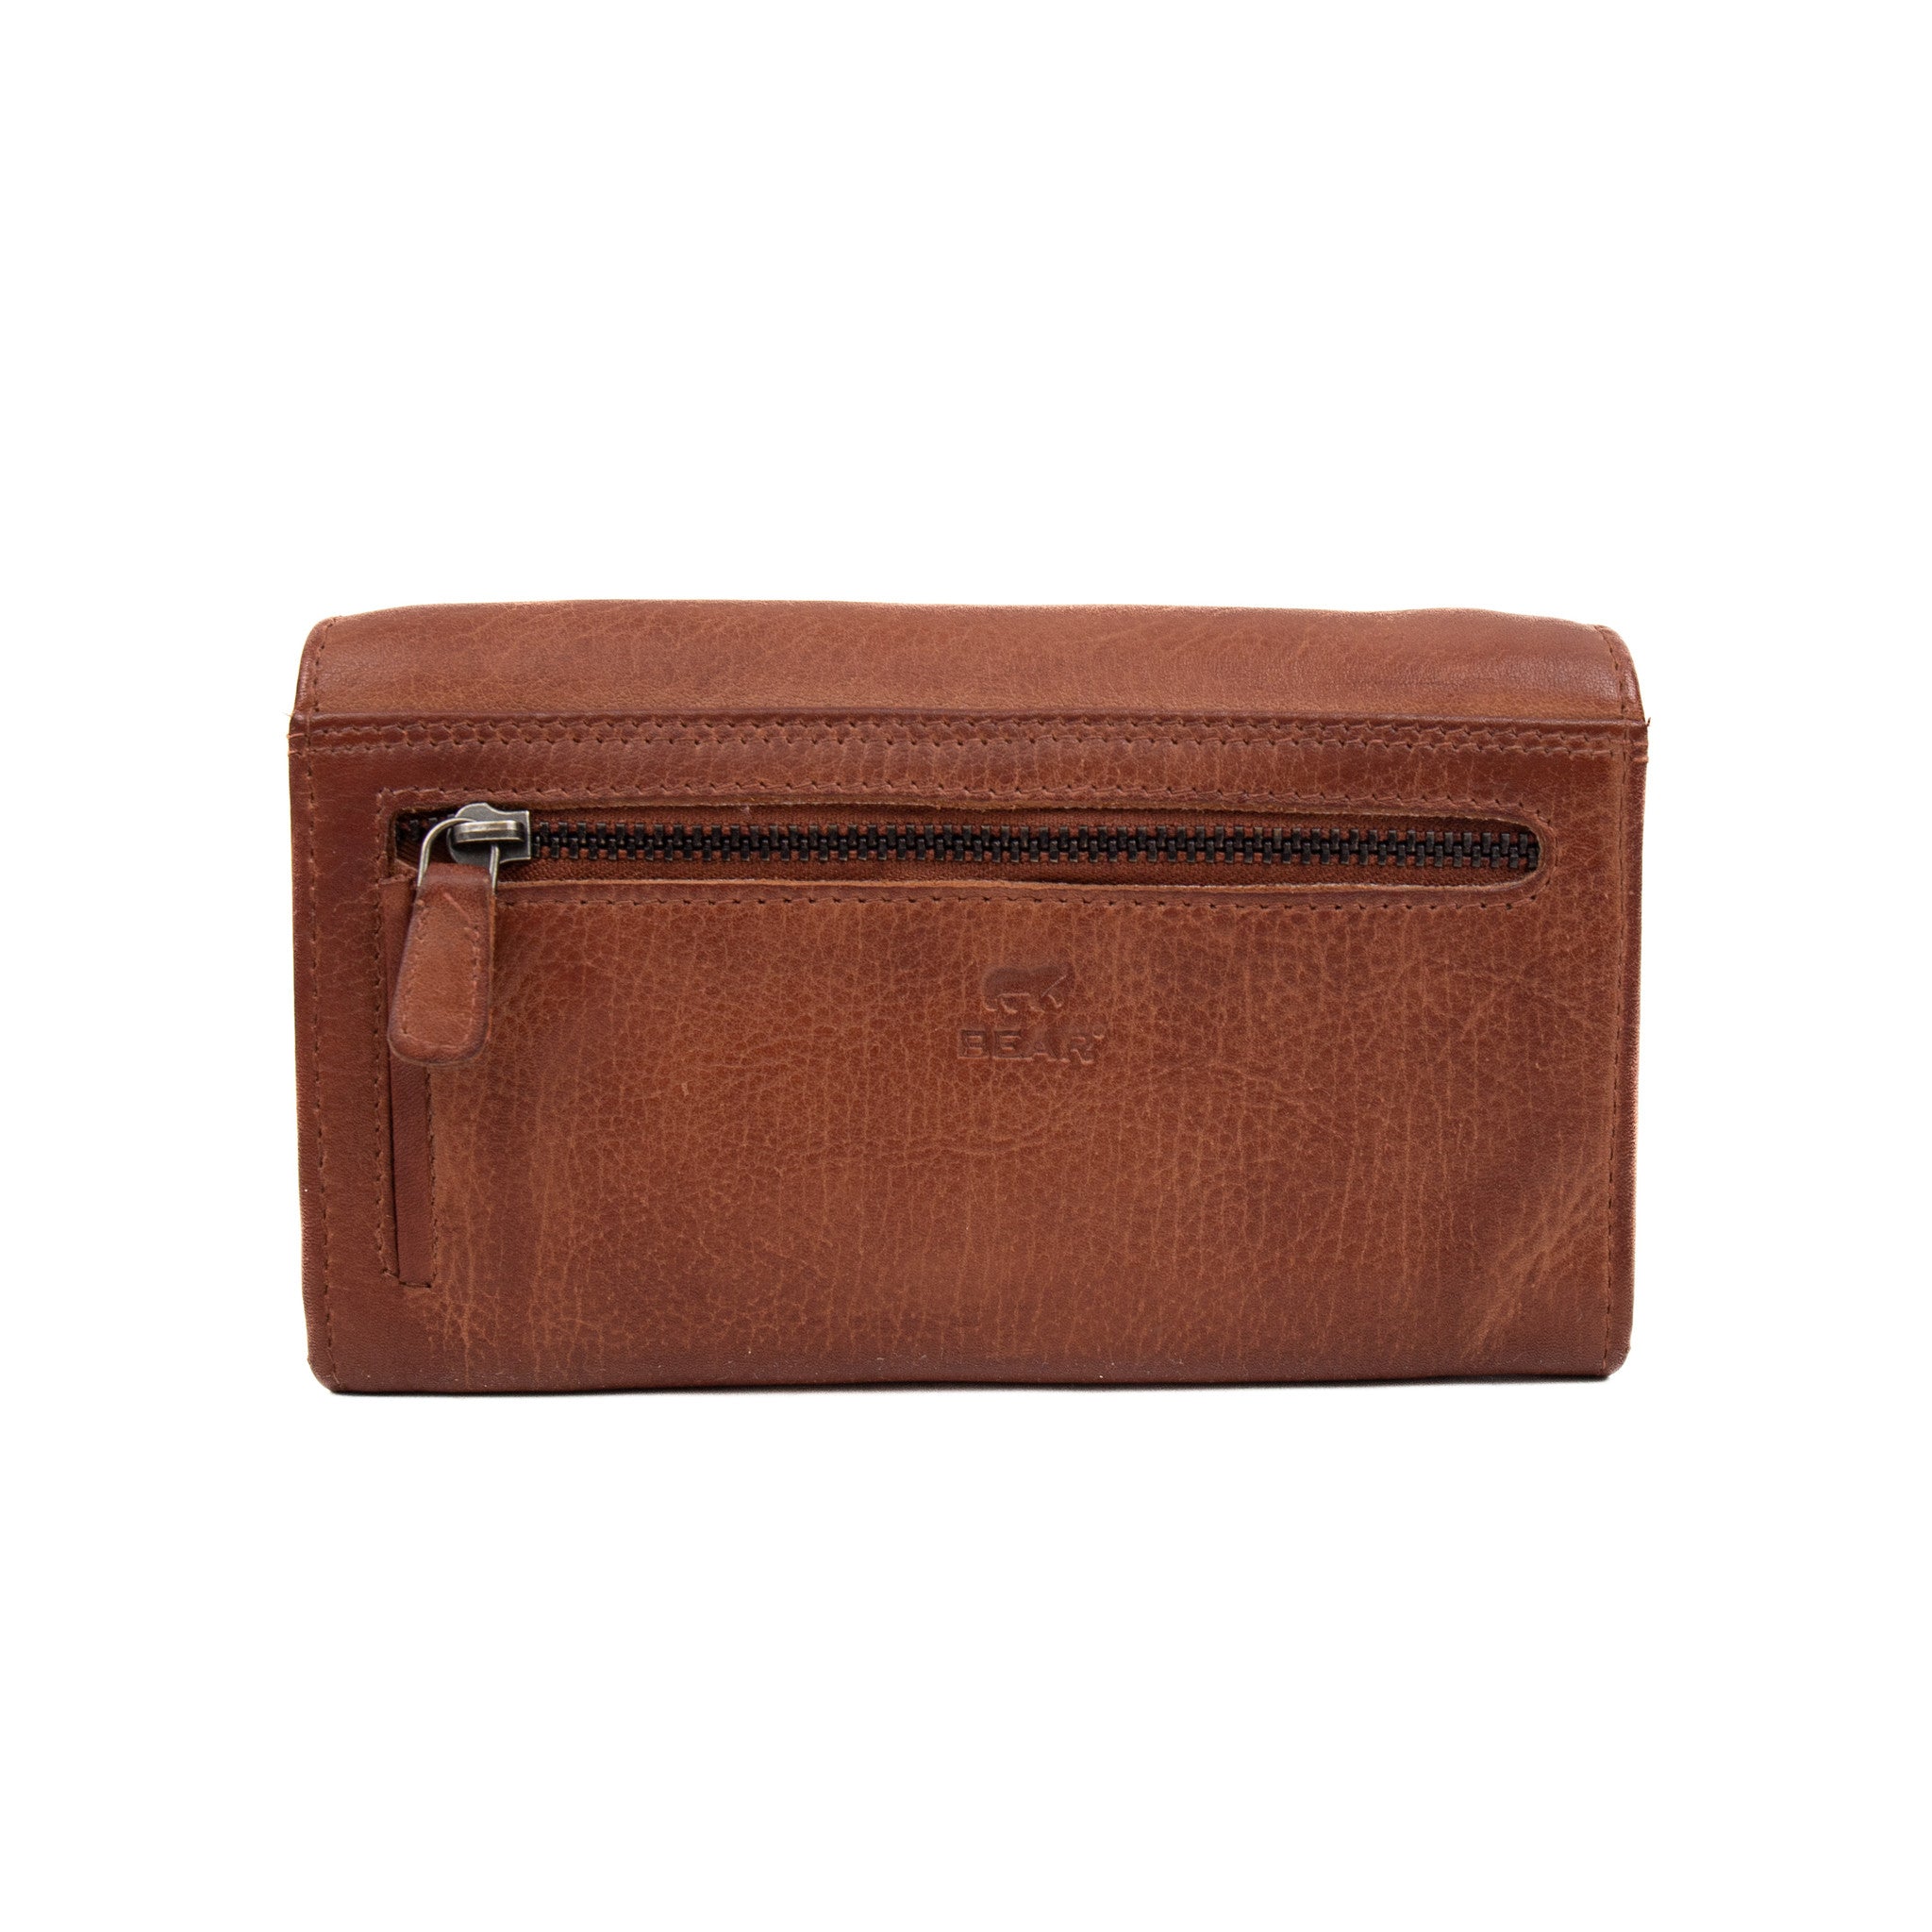 Wrap wallet 'Sigrid' cognac - CP 6096